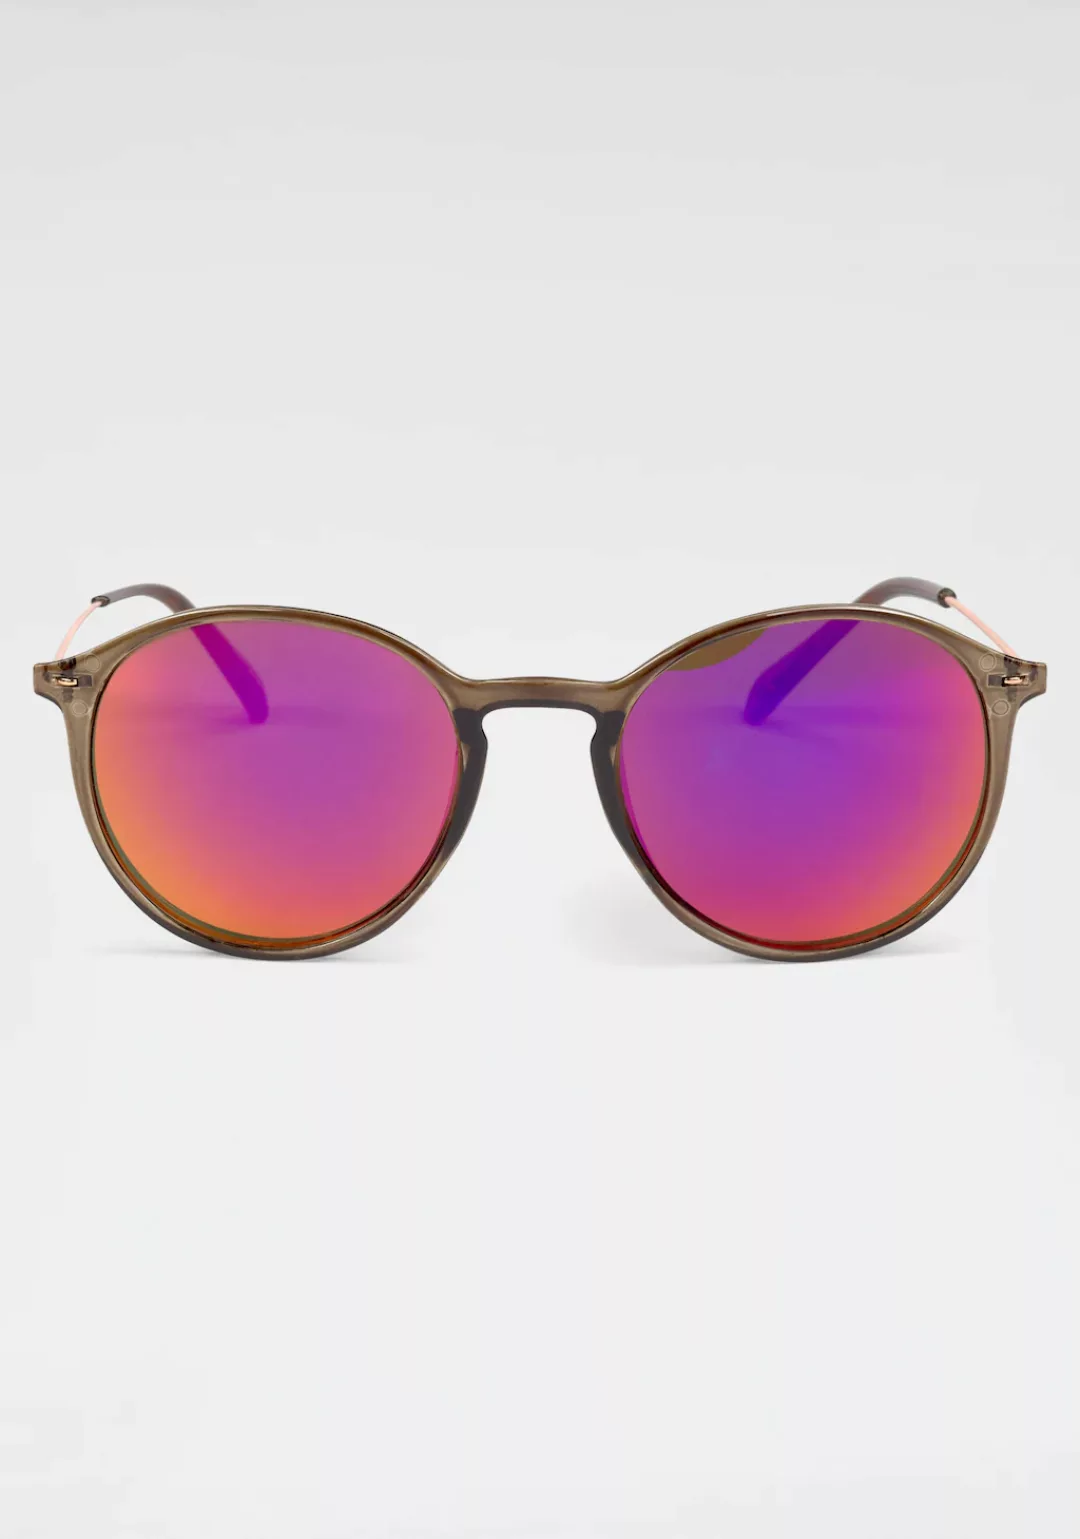 catwalk Eyewear Sonnenbrille, Filigrane Damen-Sonnenbrille mit Metallbügeln günstig online kaufen